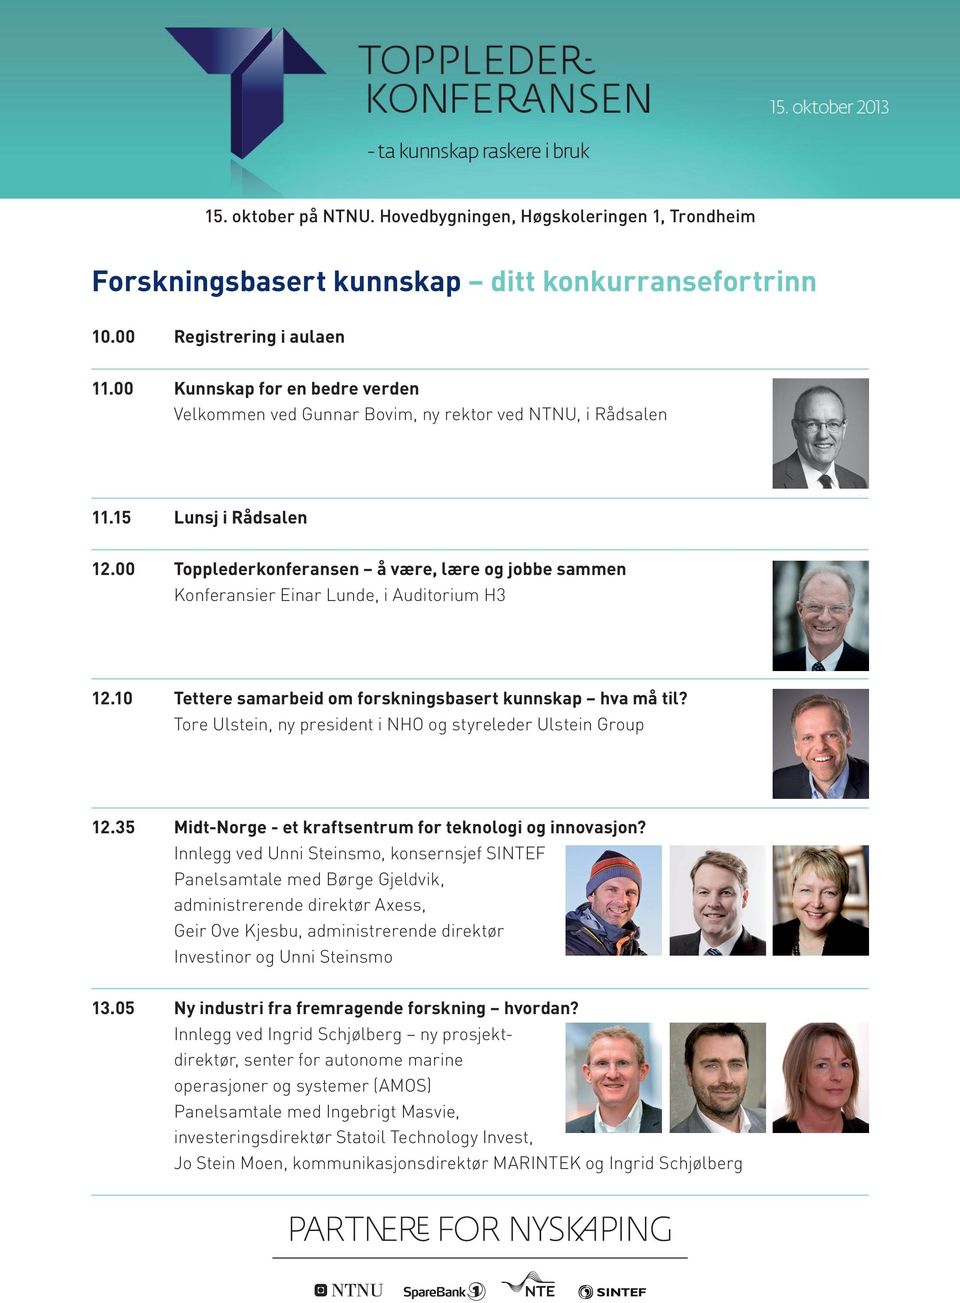 00 Topplederkonferansen å være, lære og jobbe sammen Konferansier Einar Lunde, i Auditorium H3 12.10 Tettere samarbeid om forskningsbasert kunnskap hva må til?